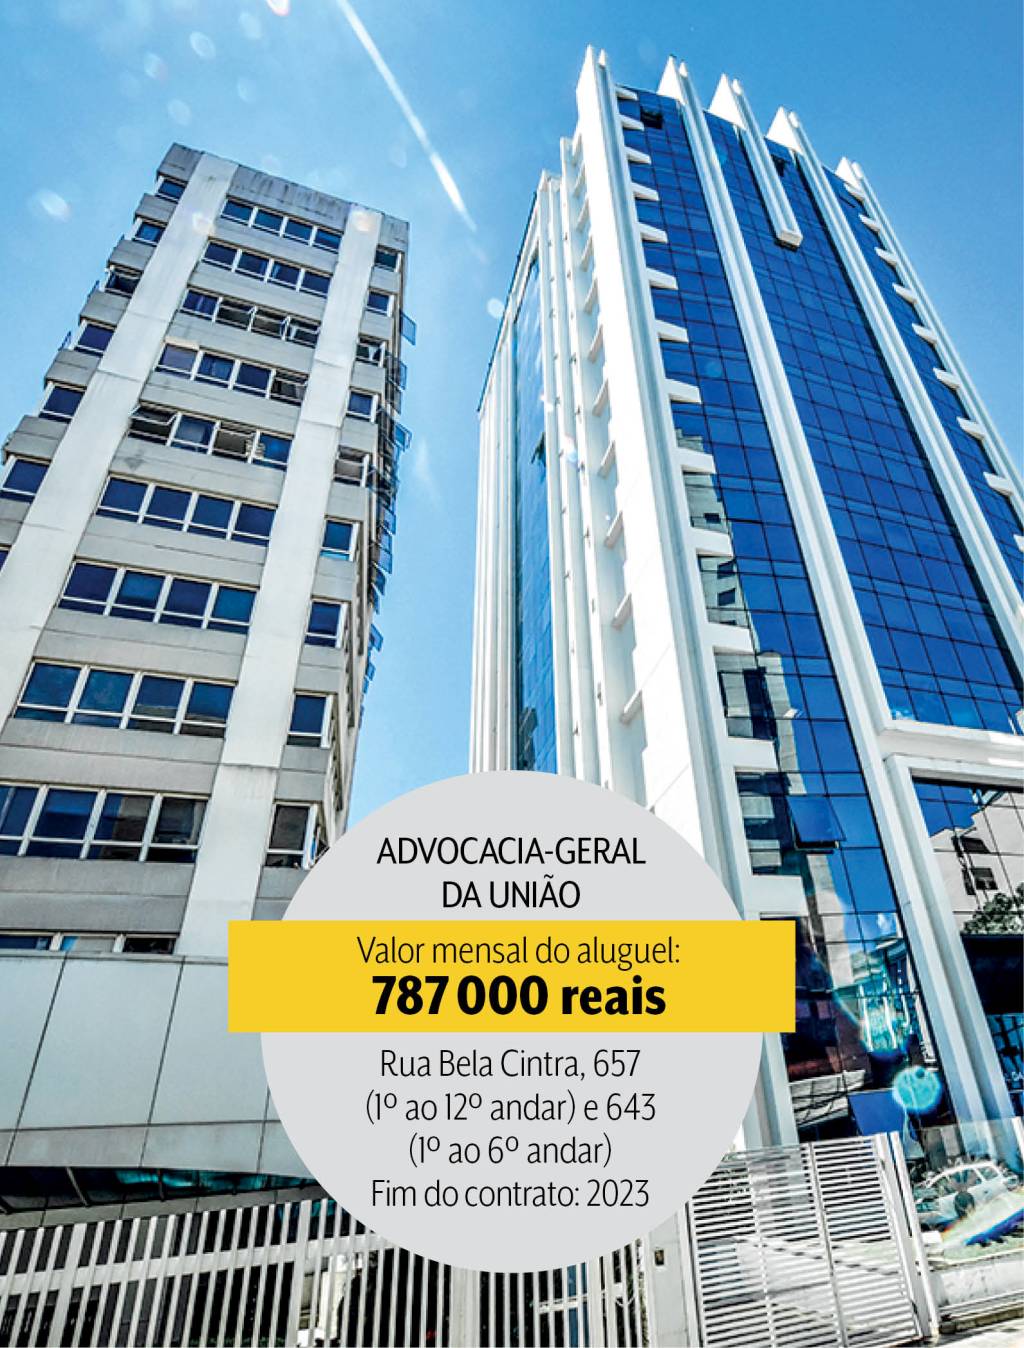 Advocacia-Geral da União: 9,4 milhões de reais em dois edifícios na Rua Bela Cintra